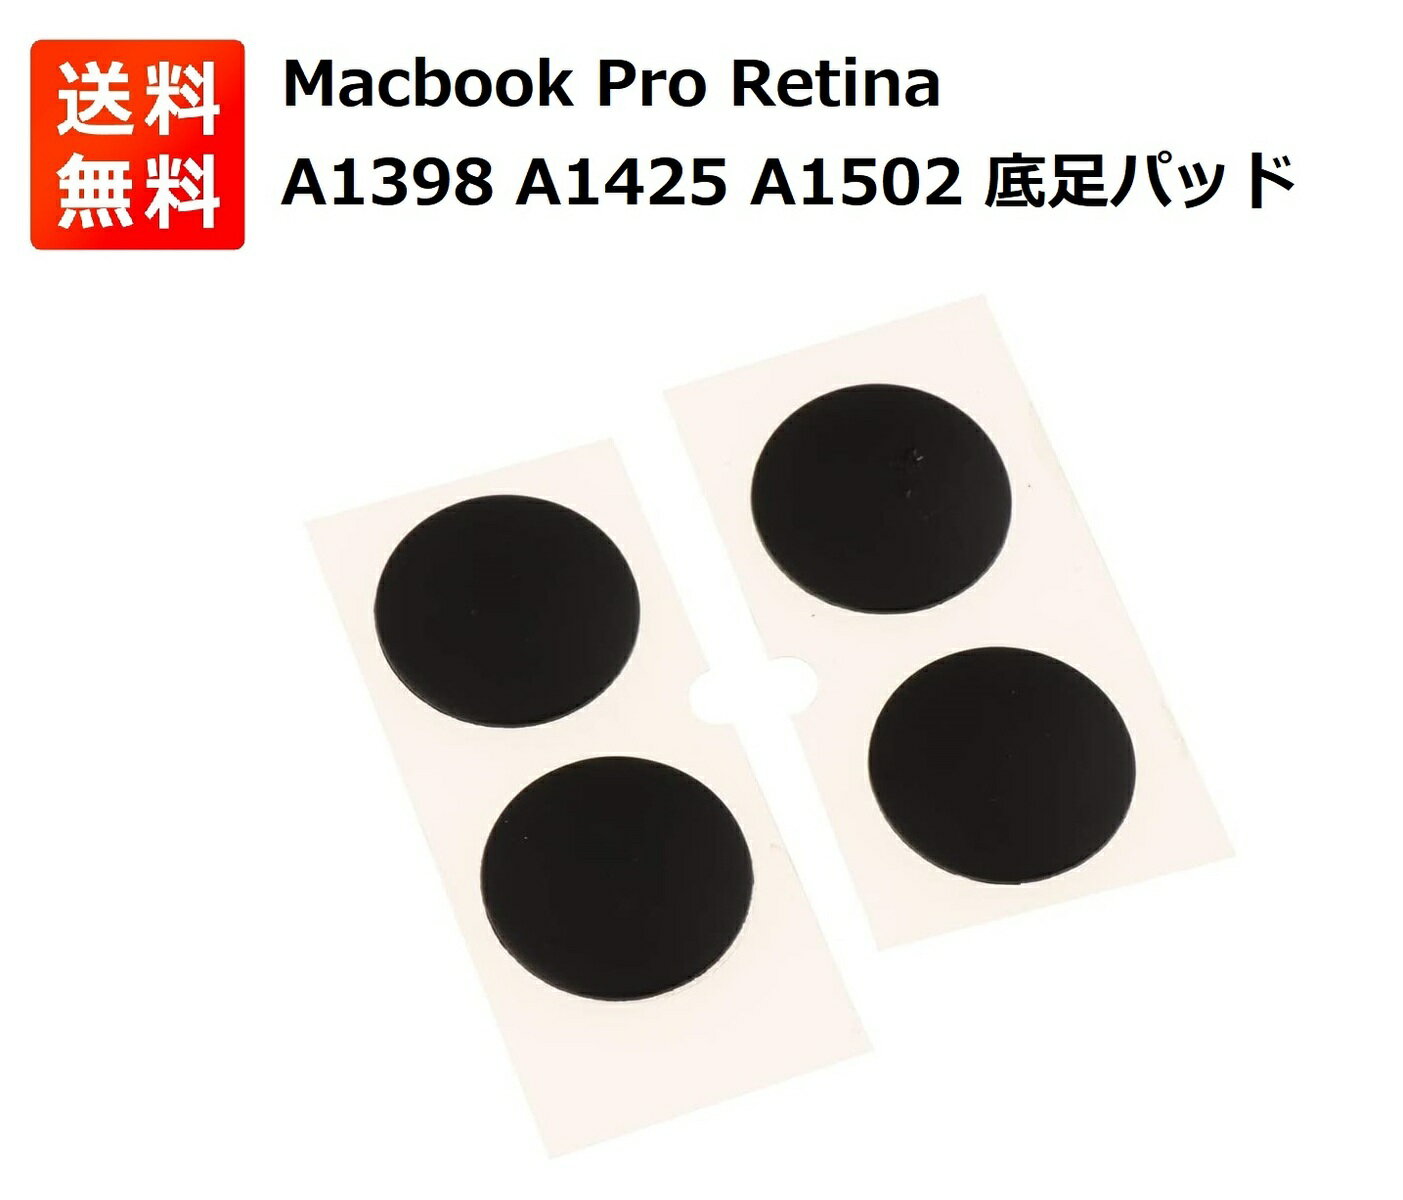  Macbook Pro Retina A1398 A1425 A1502用 ゴム足 底足 パッド 交換 修理 部品 4個